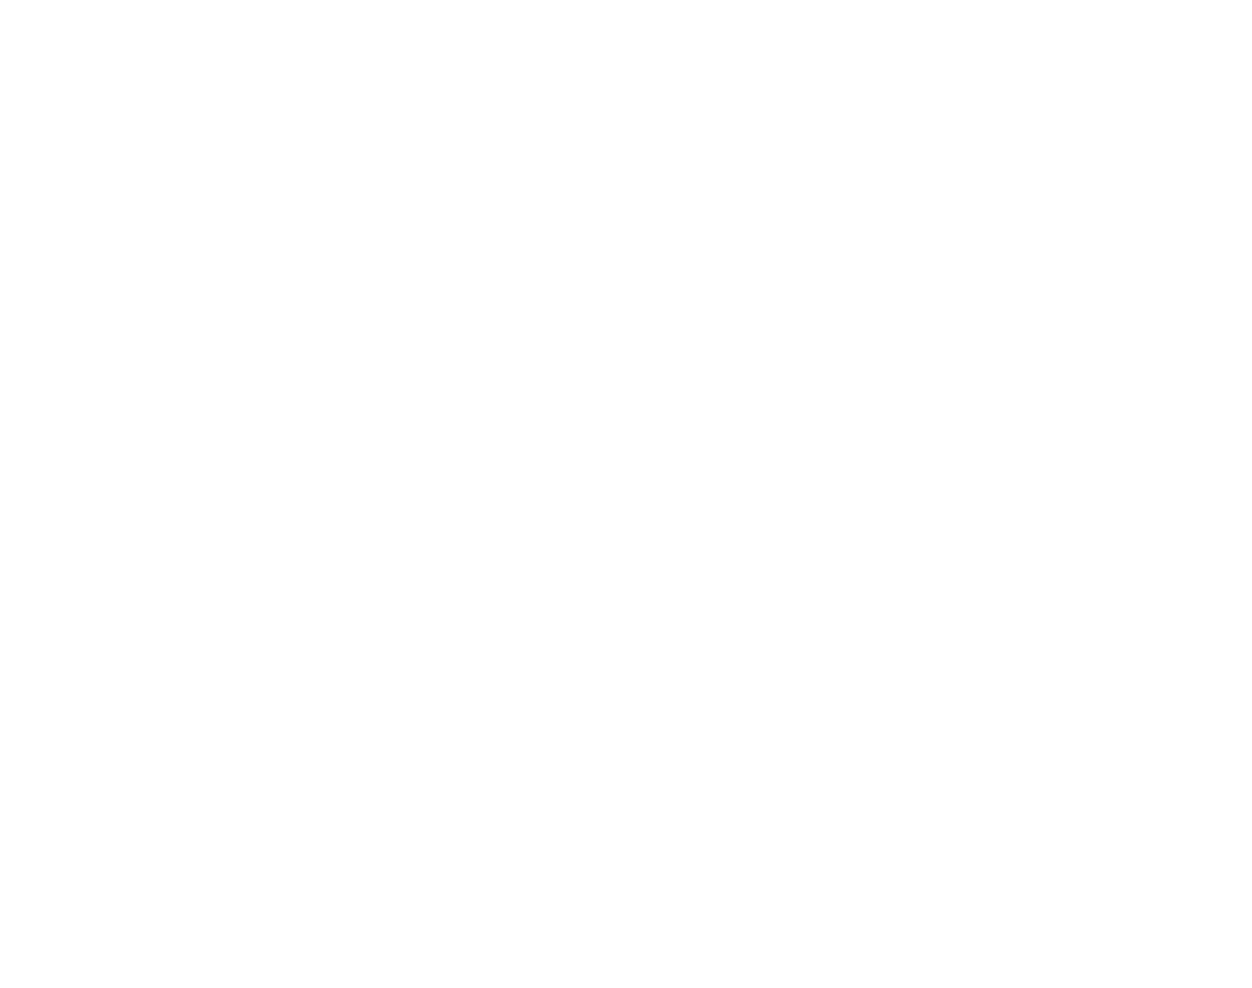 Swedish Beauty Awards